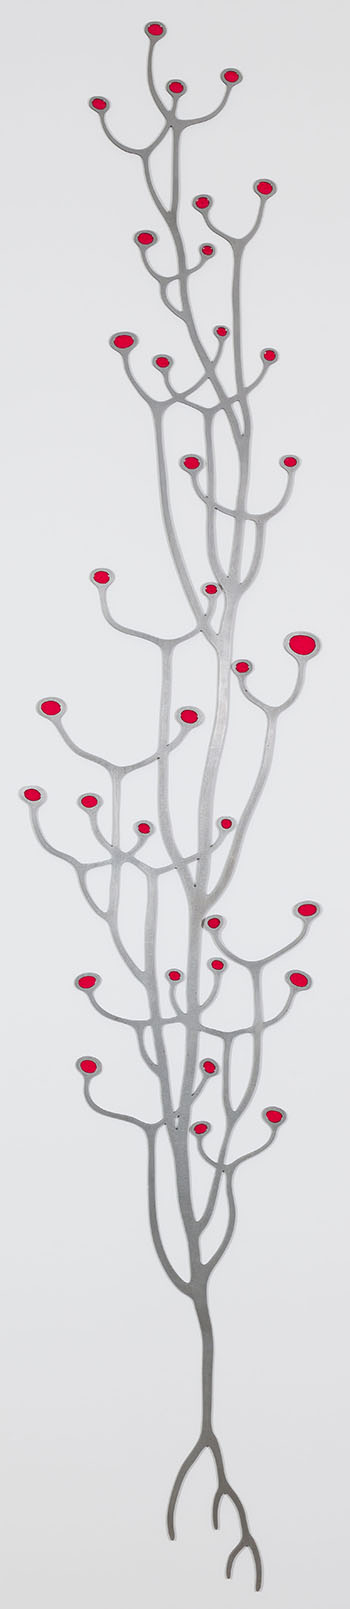 Twig (Version 2, Red) by Marianne Lovink